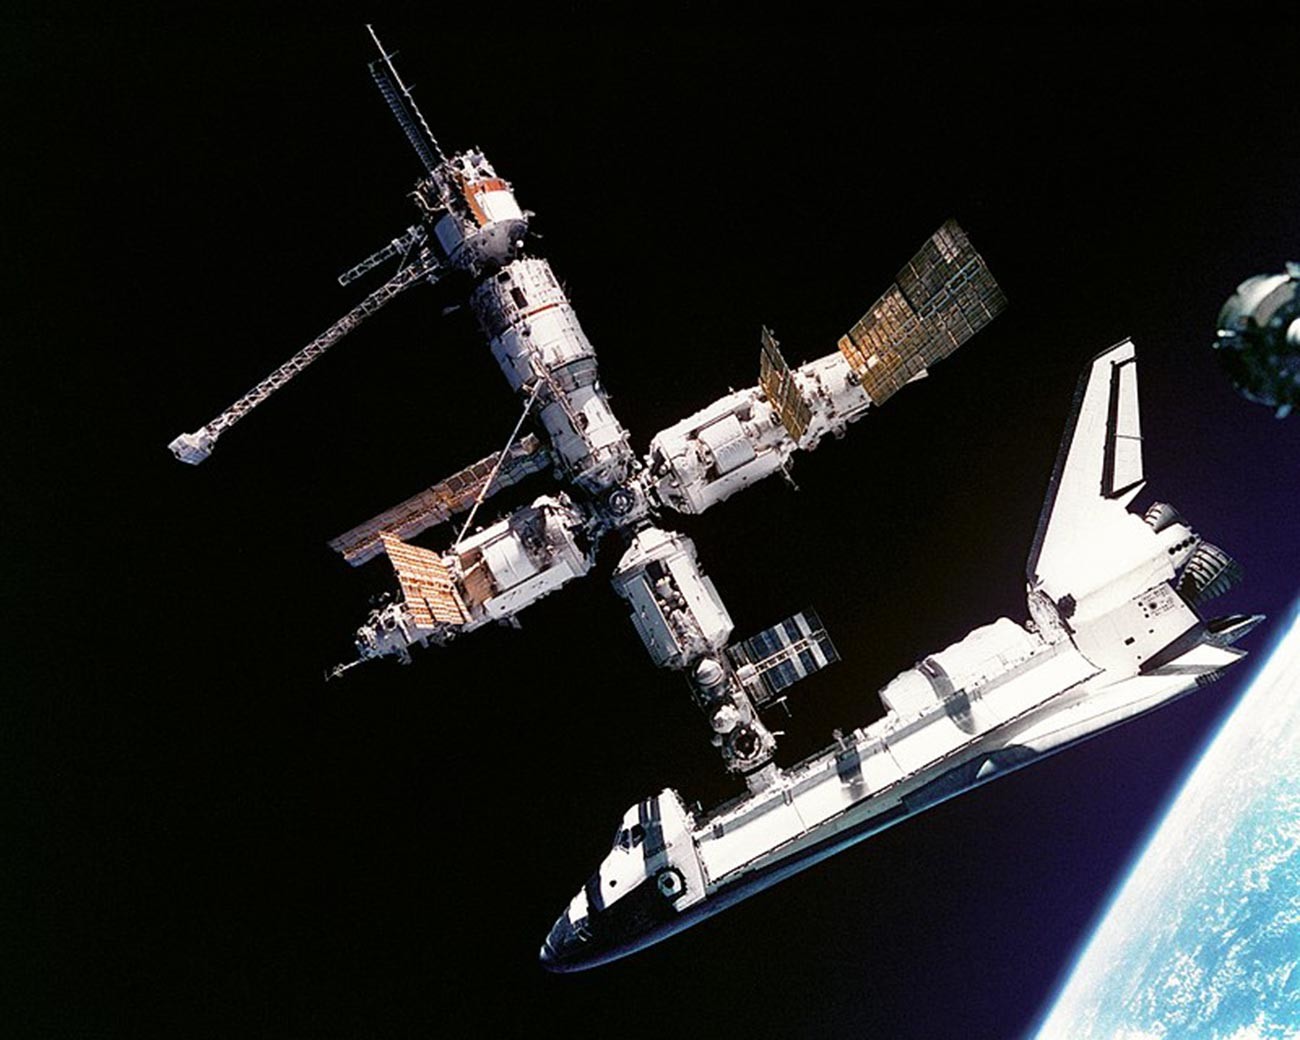 La navette spatiale Atlantis amarrée à la station Mir le 4 juillet 1995